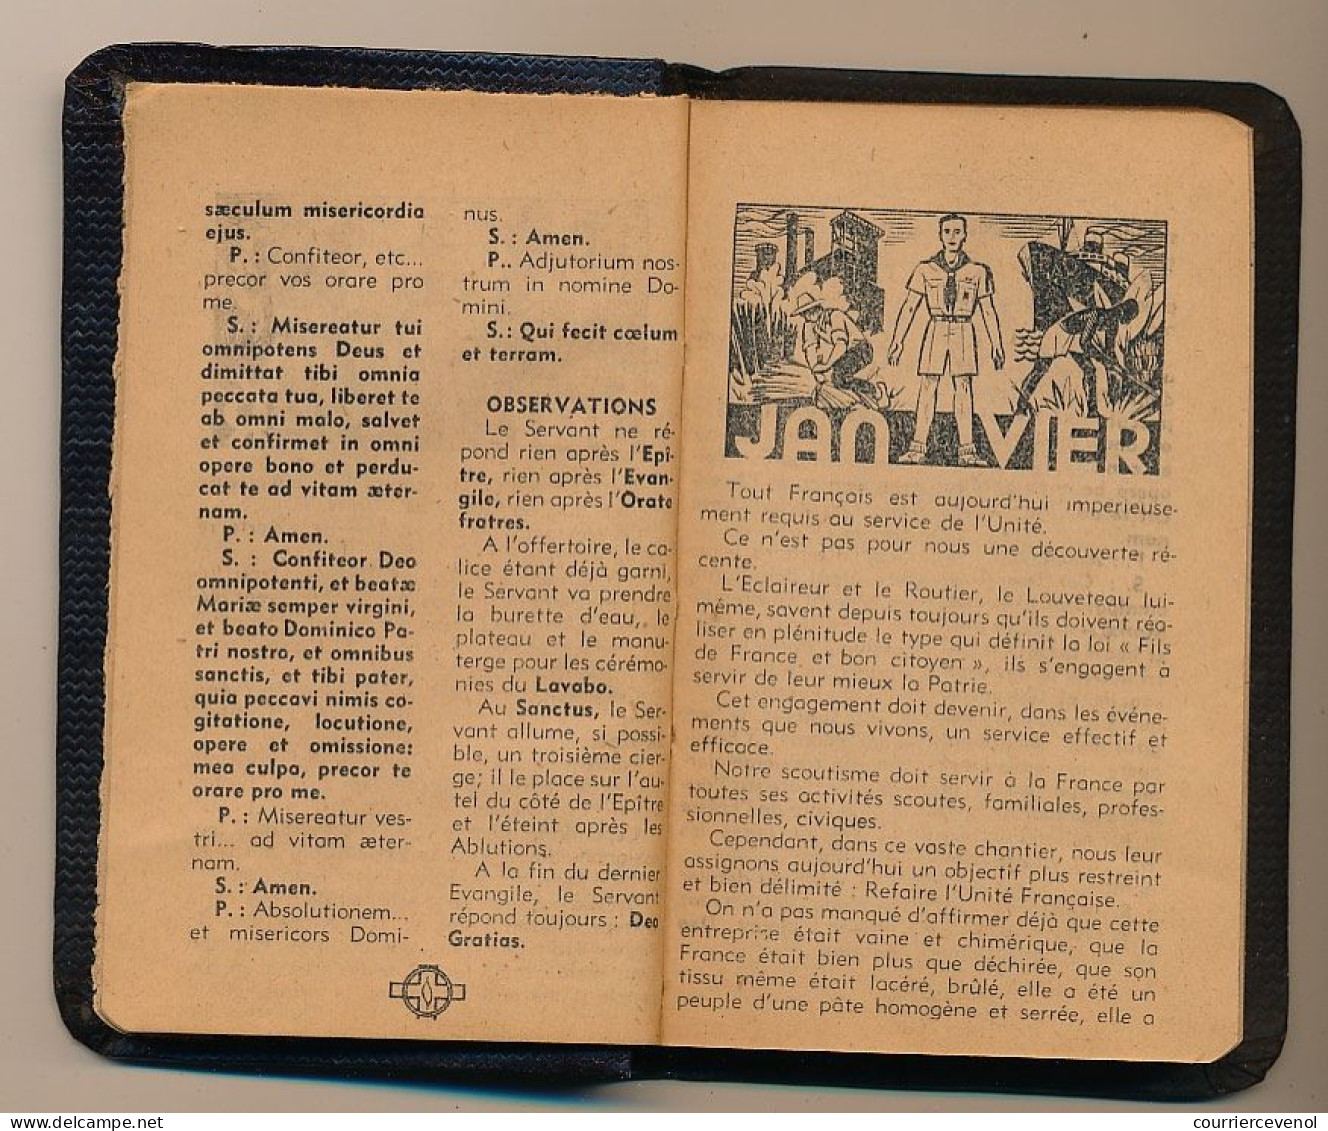 FRANCE - SCOUTISME - Petit Agenda "KIM 1945" - 7,5cm X 11,5cm - Année 1945, Pour Scouts Et Guides De France - Scoutisme